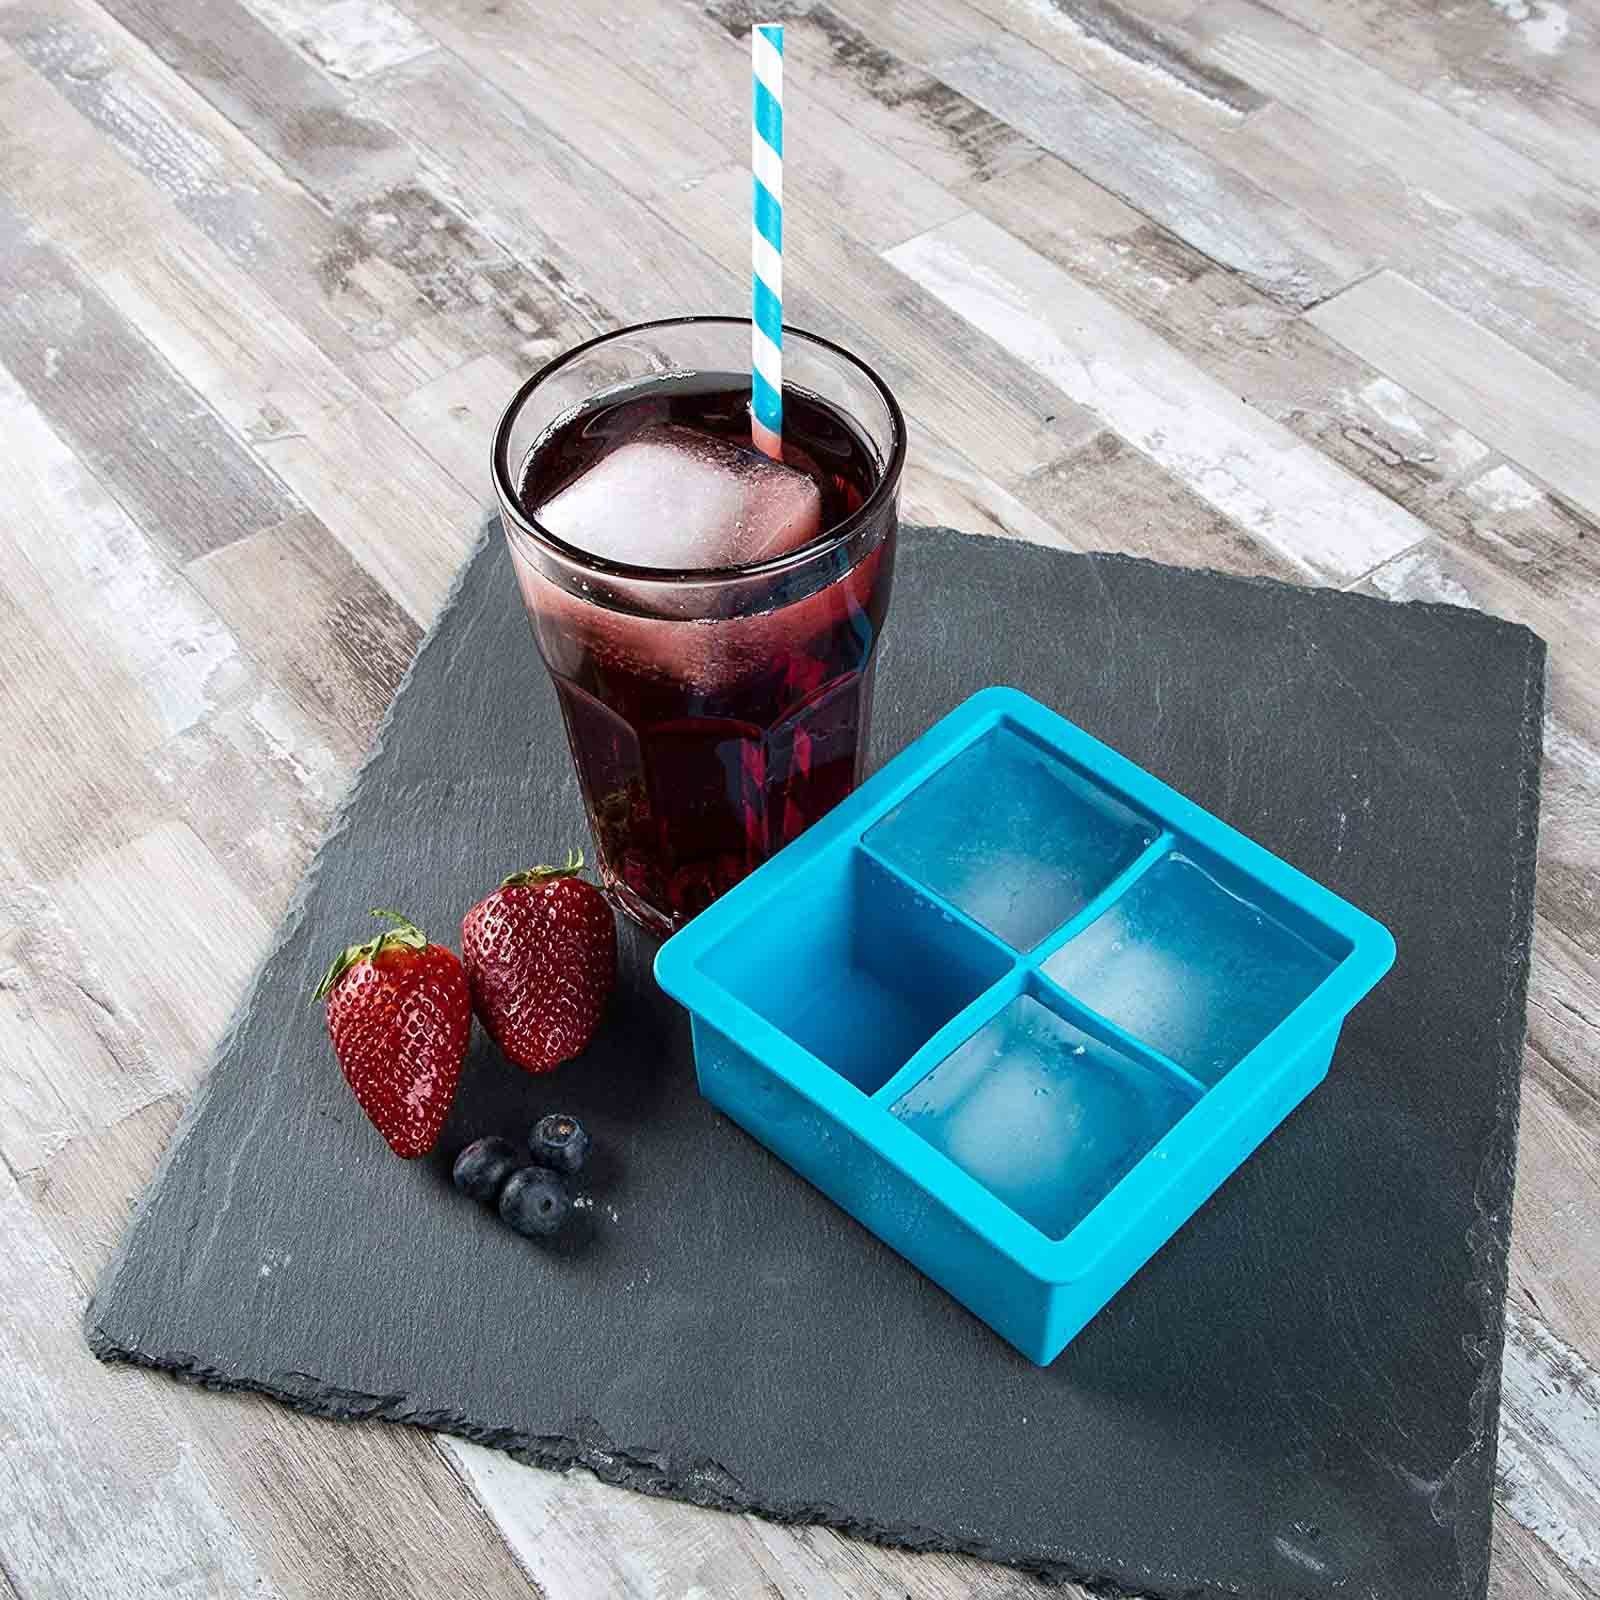 Eiswürfel HAC24 Set Silikon Eiswürfelform mit Silikonform, Eiswürfelbehälter aus Behältern Eiswürfelbereiter teiliges 4